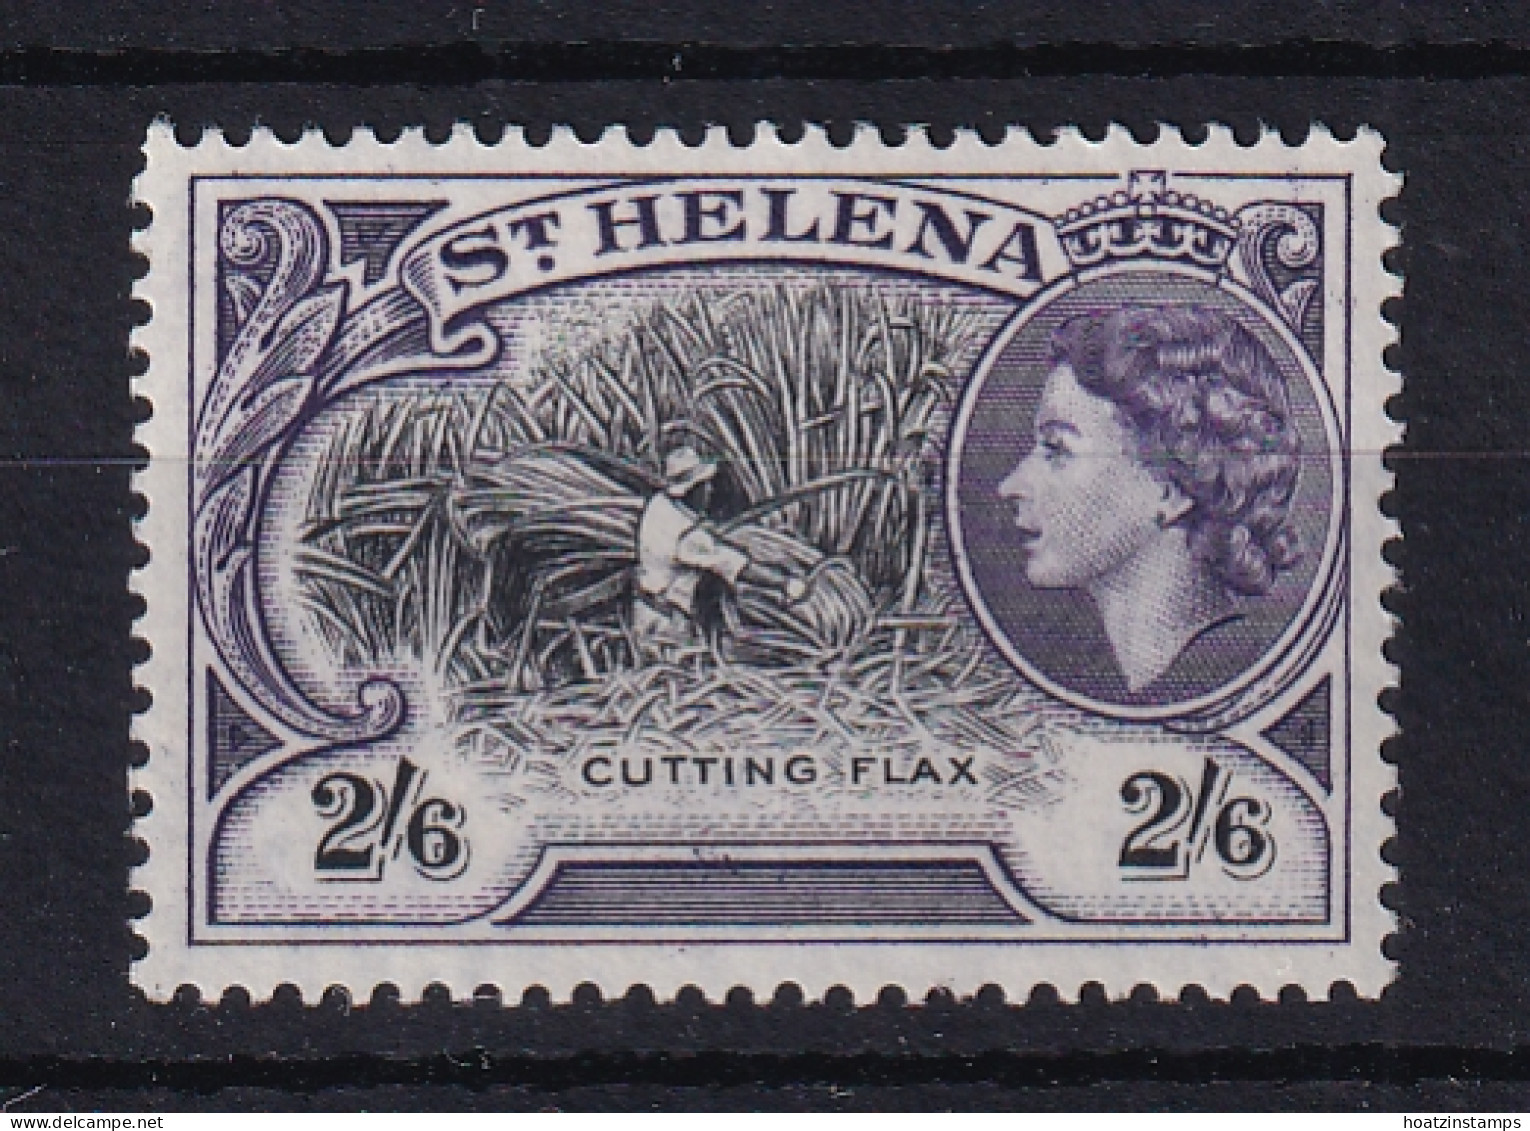 St Helena: 1953/59   QE II - Pictorial     SG163    2/6d       MH - St. Helena